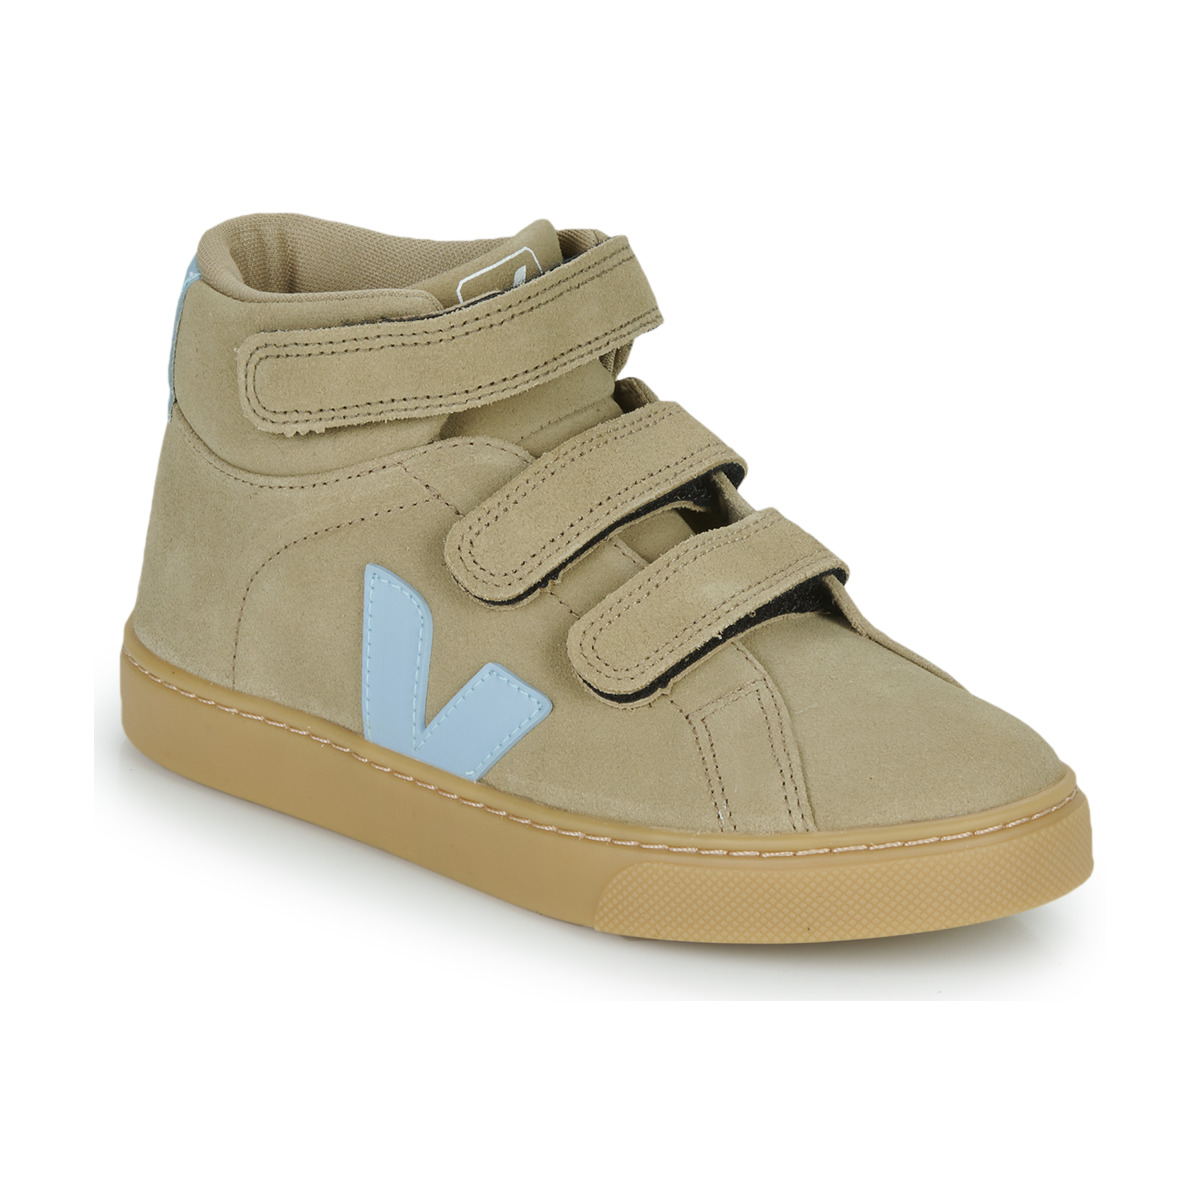 Παπούτσια Παιδί Ψηλά Sneakers Veja SMALL ESPLAR MID Beige / Μπλέ